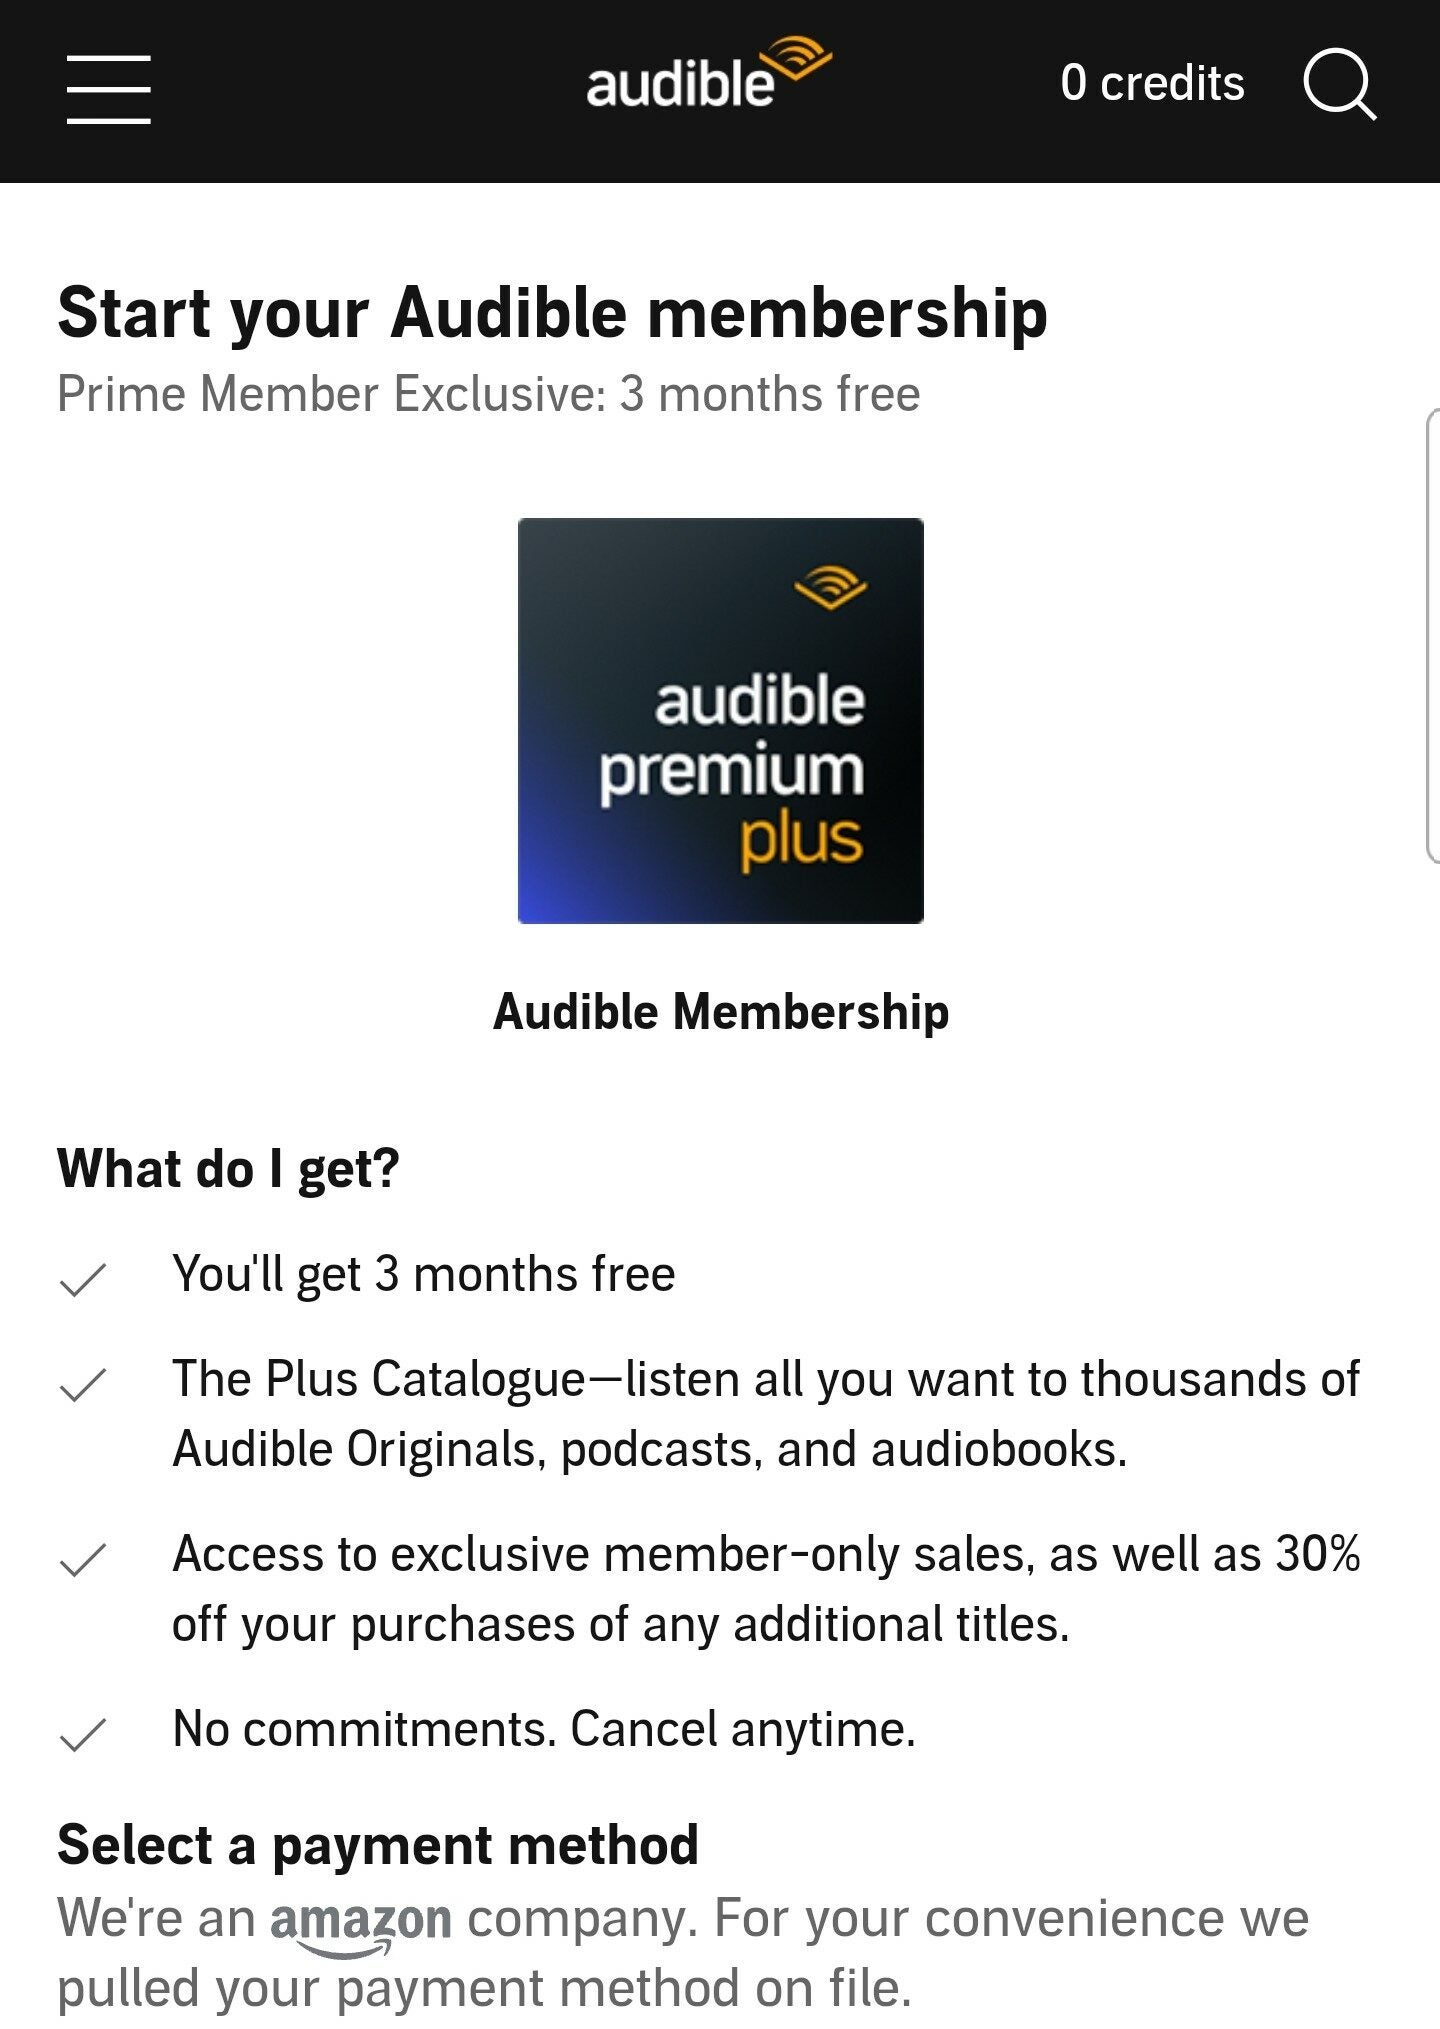 Audible Premium Plus Membership for Prime Members